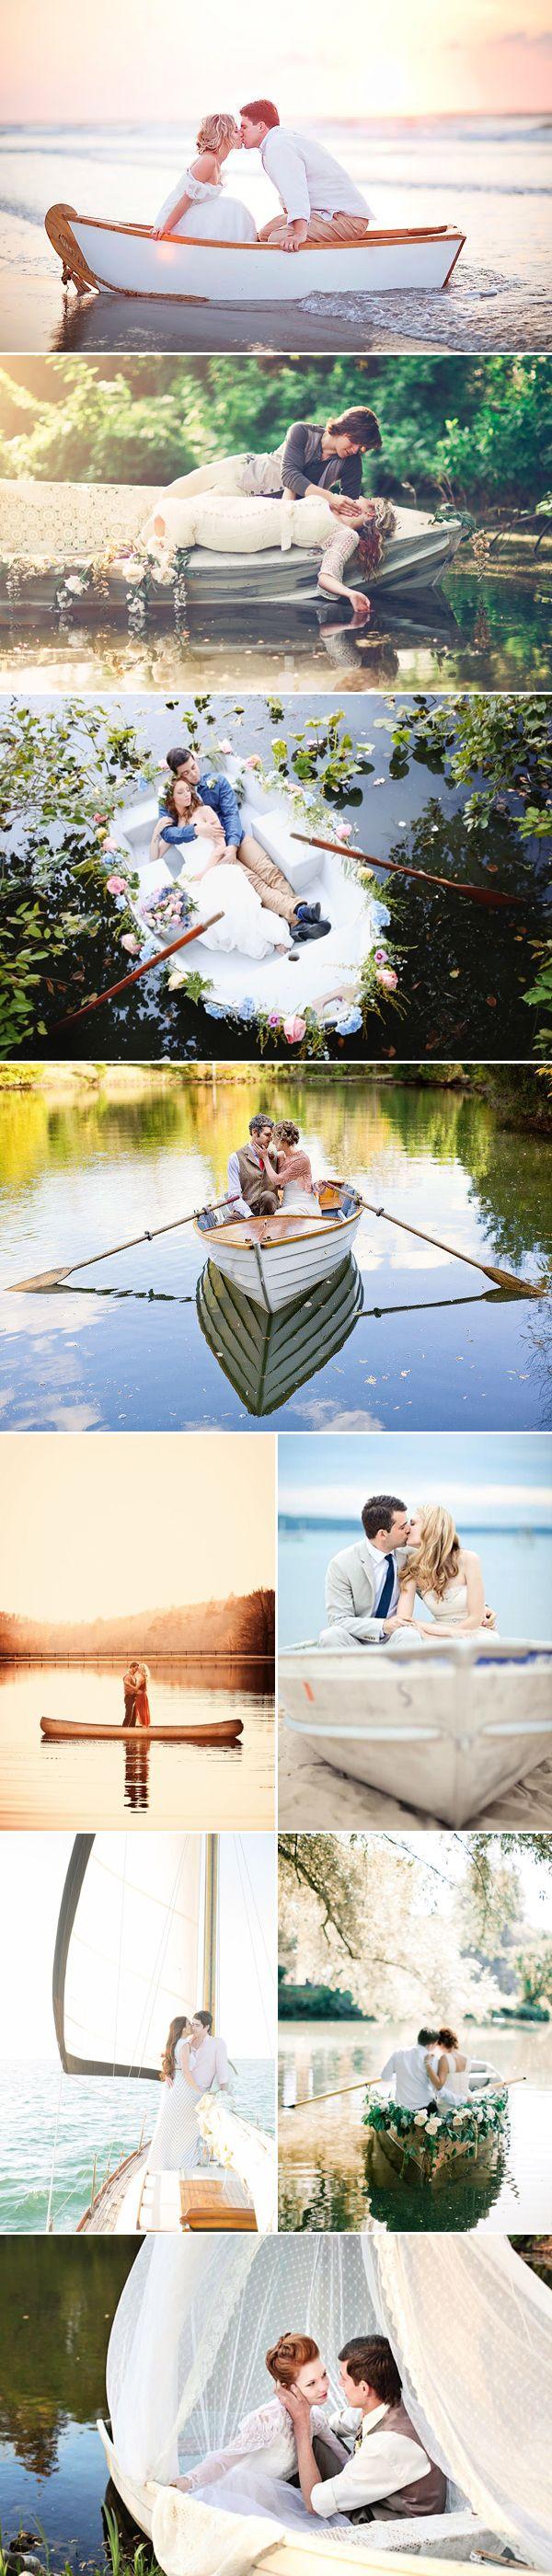 Свадьба - Romantic Love-Boat Engagement Photo Ideas